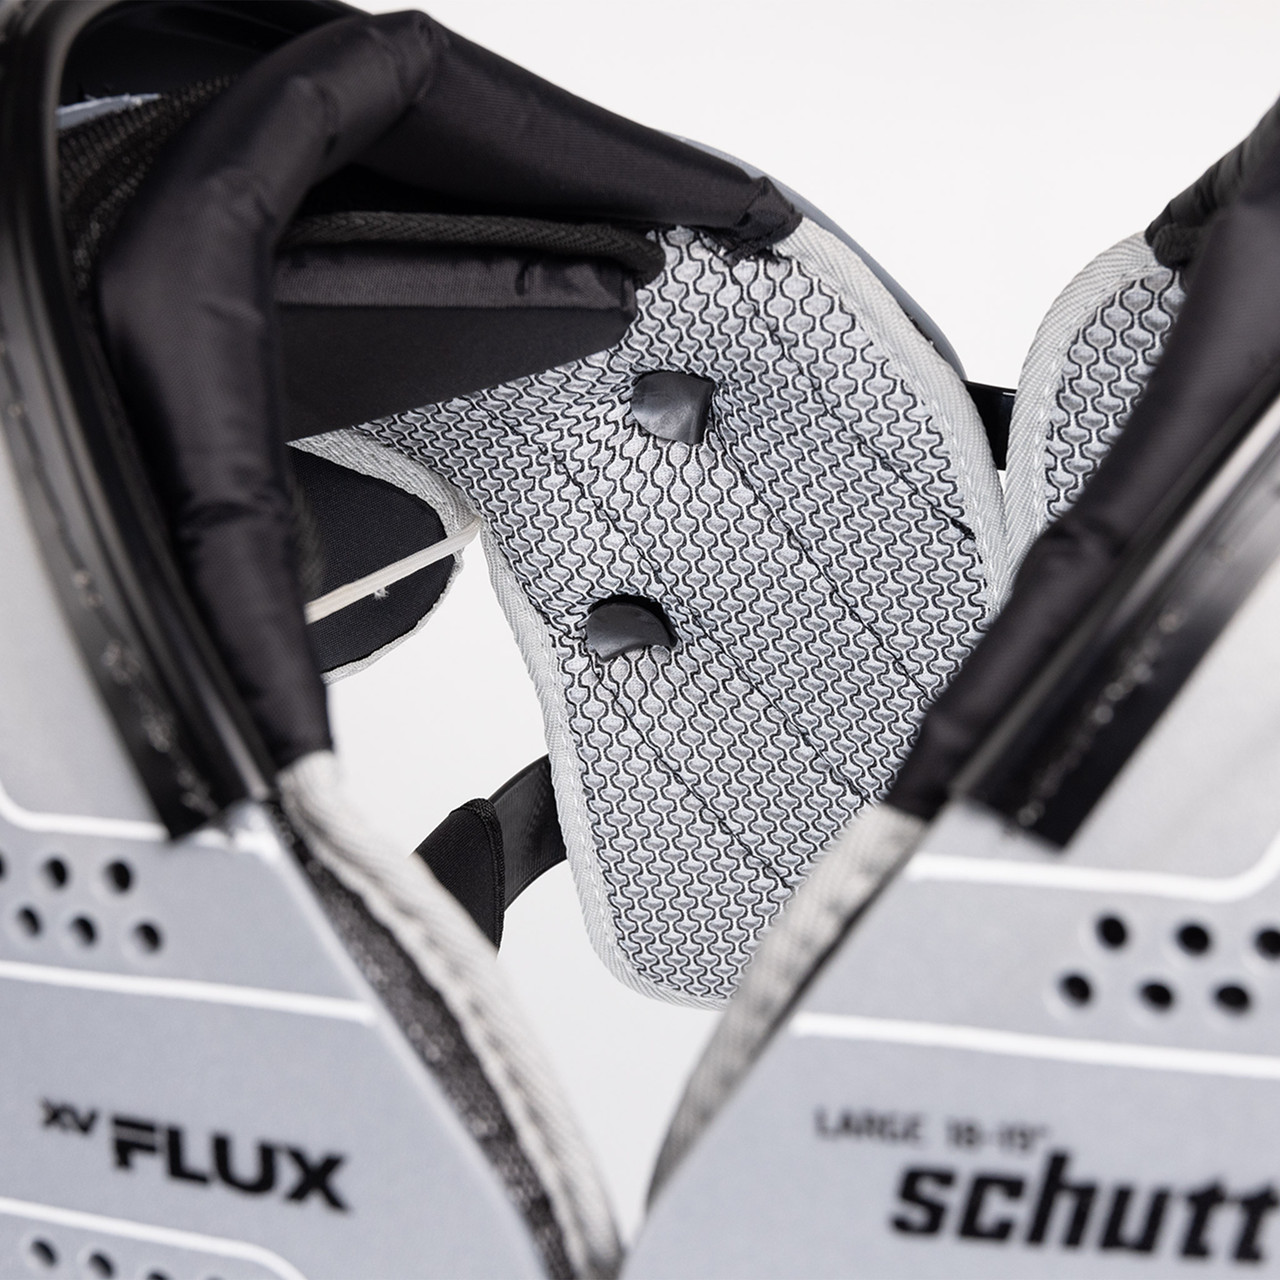 Schutt XV Flux Series All Purpose Football Shoulder Pads 2XL